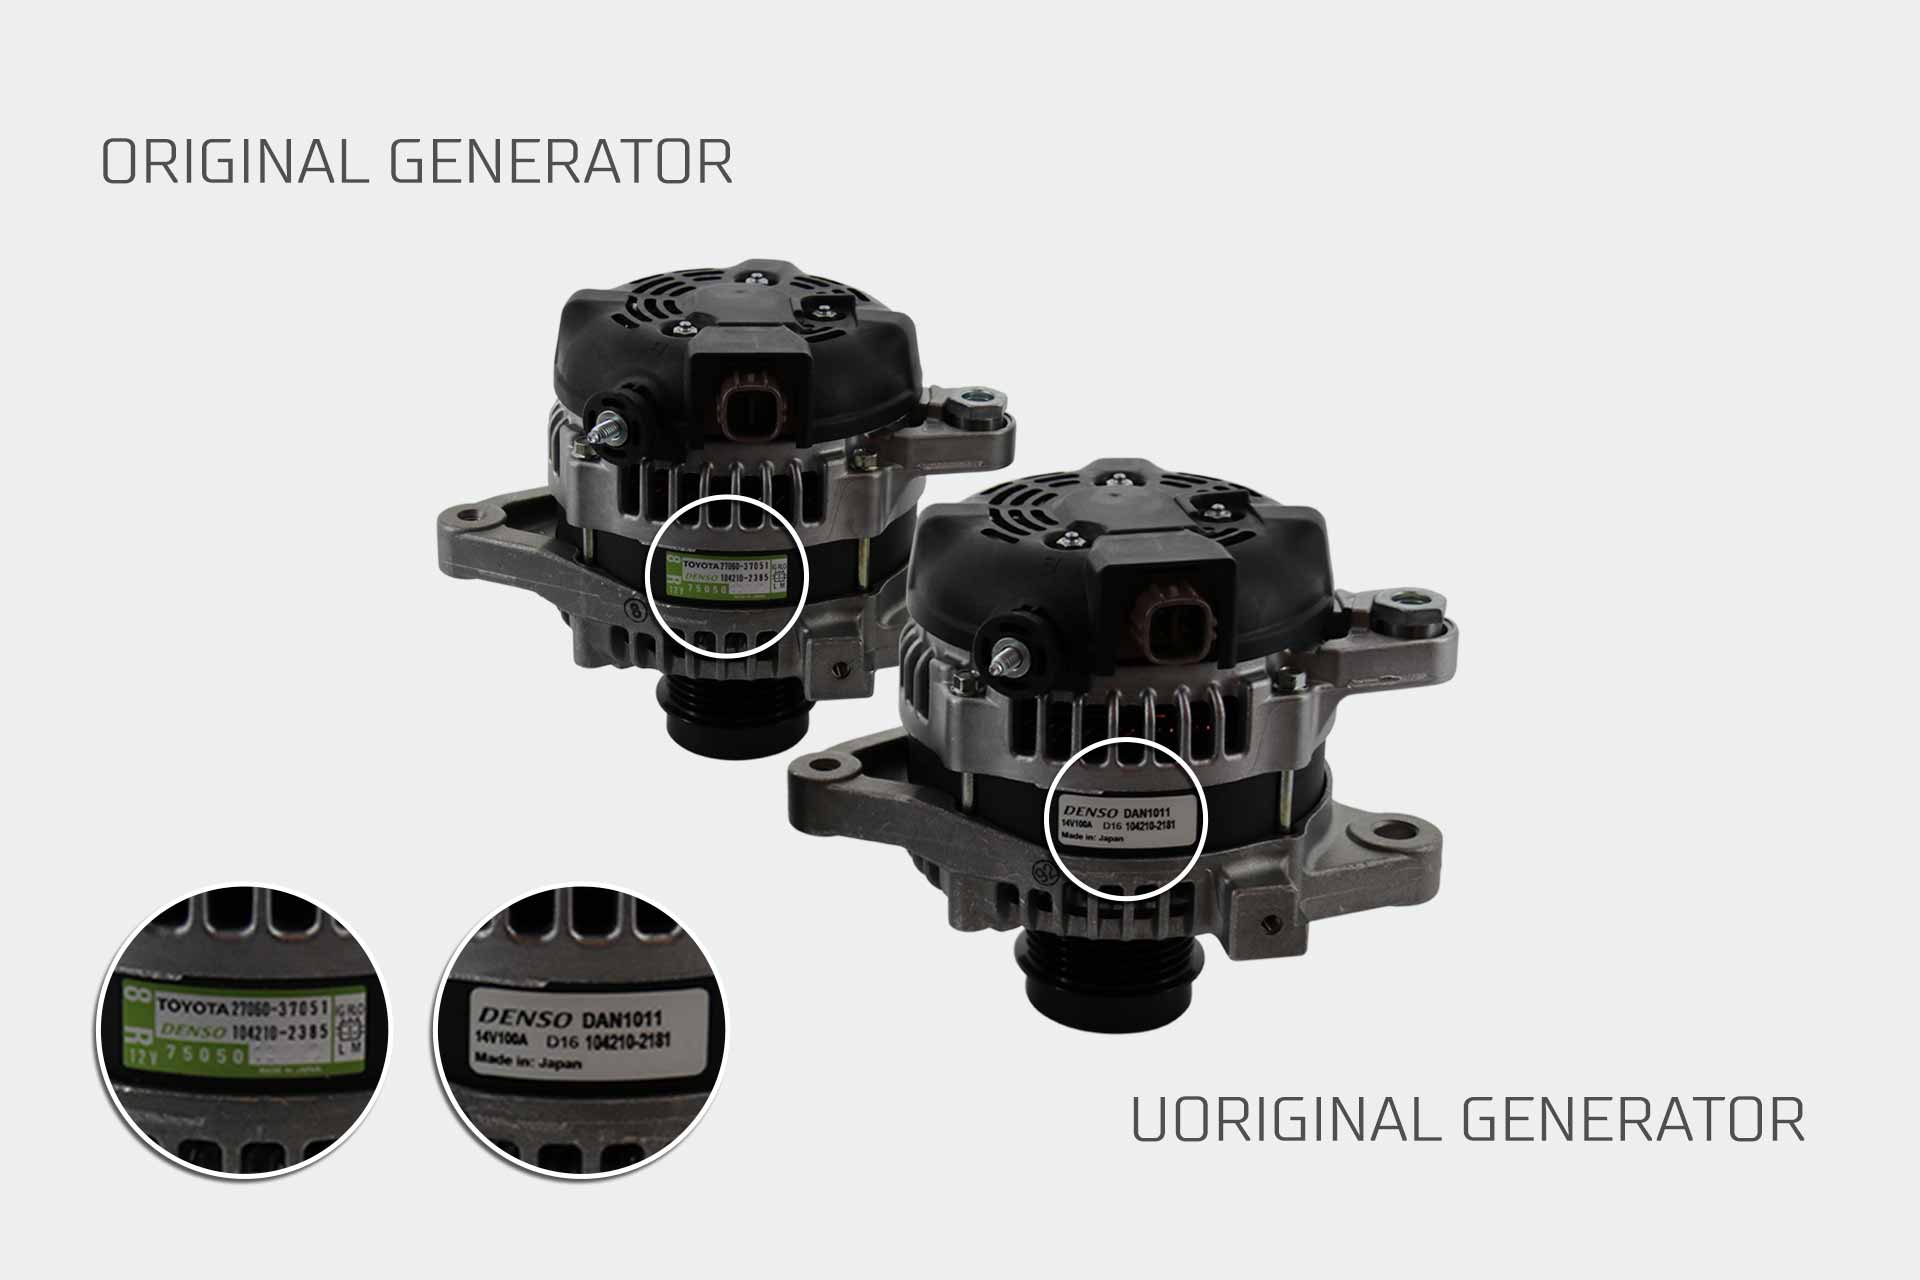 Original generator vs Uoriginal generator